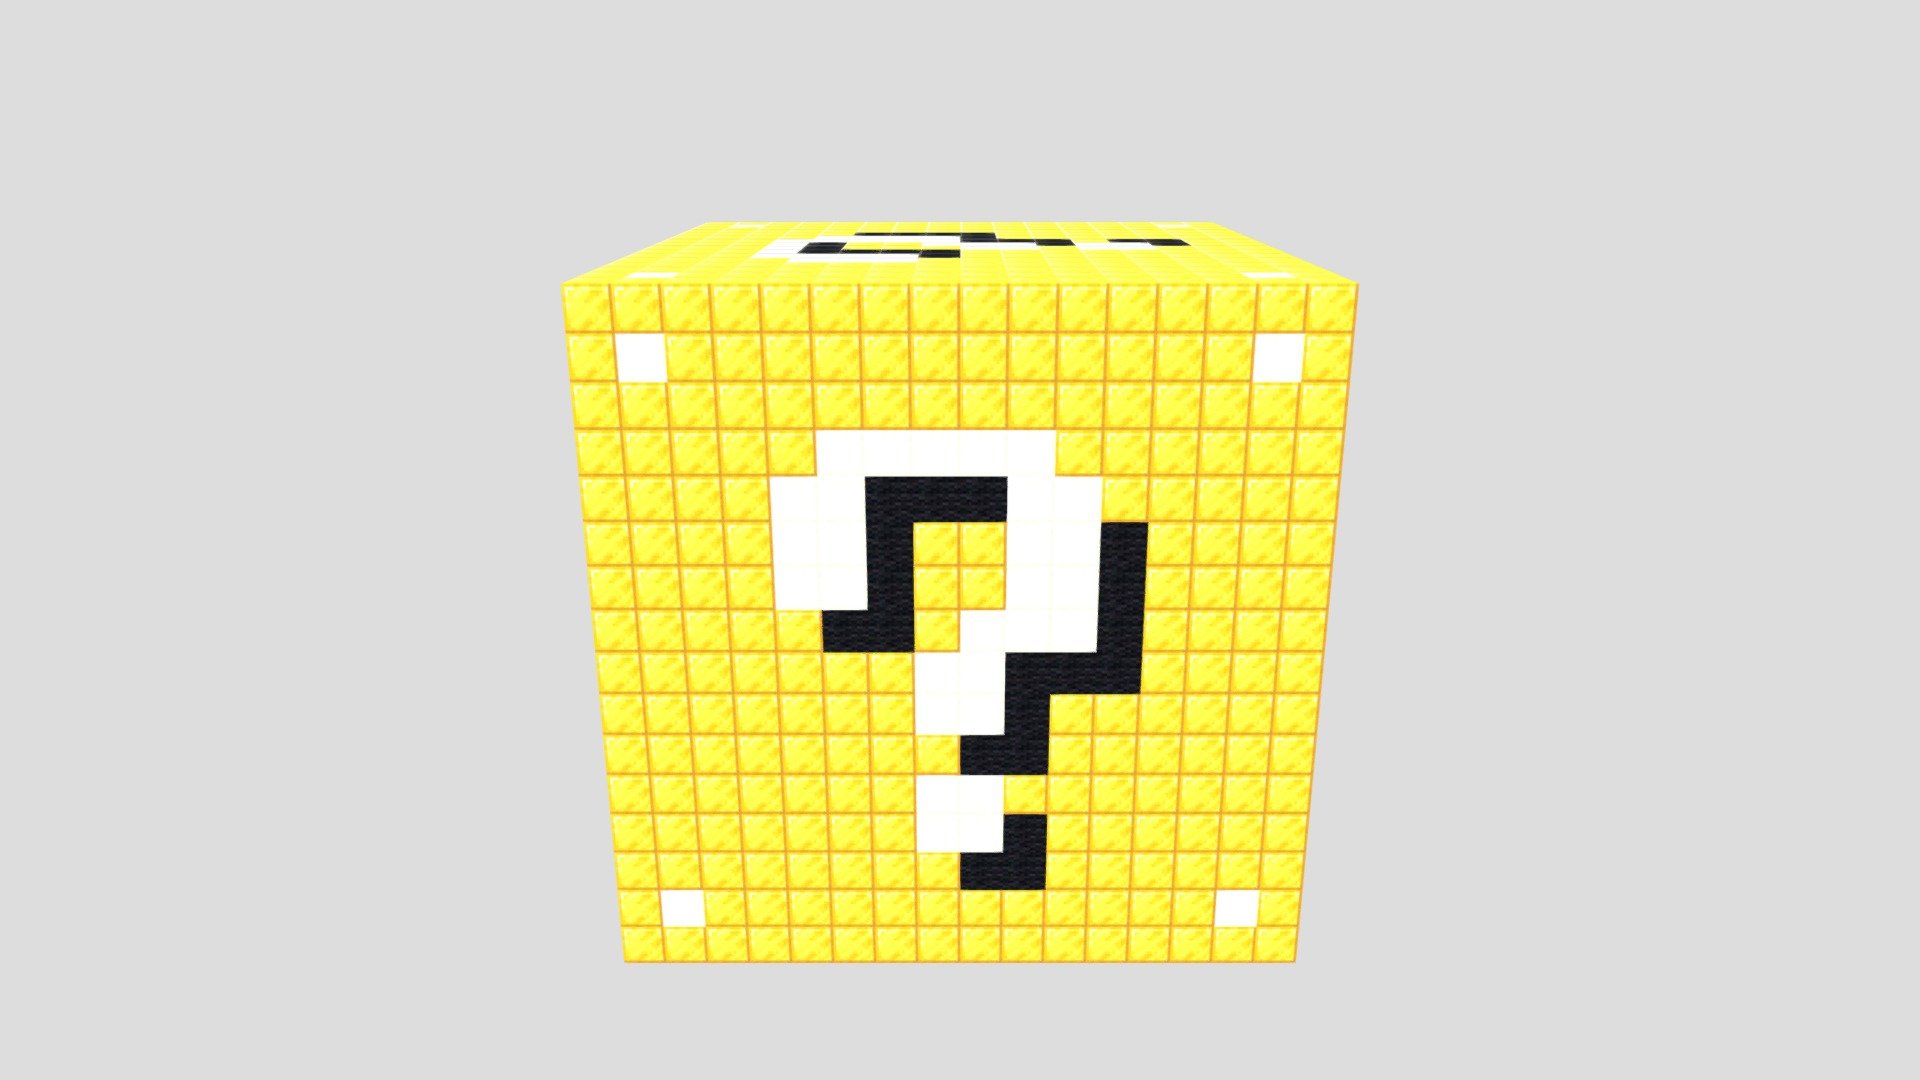 Lucky Block 2.0 - Make Pixel Art